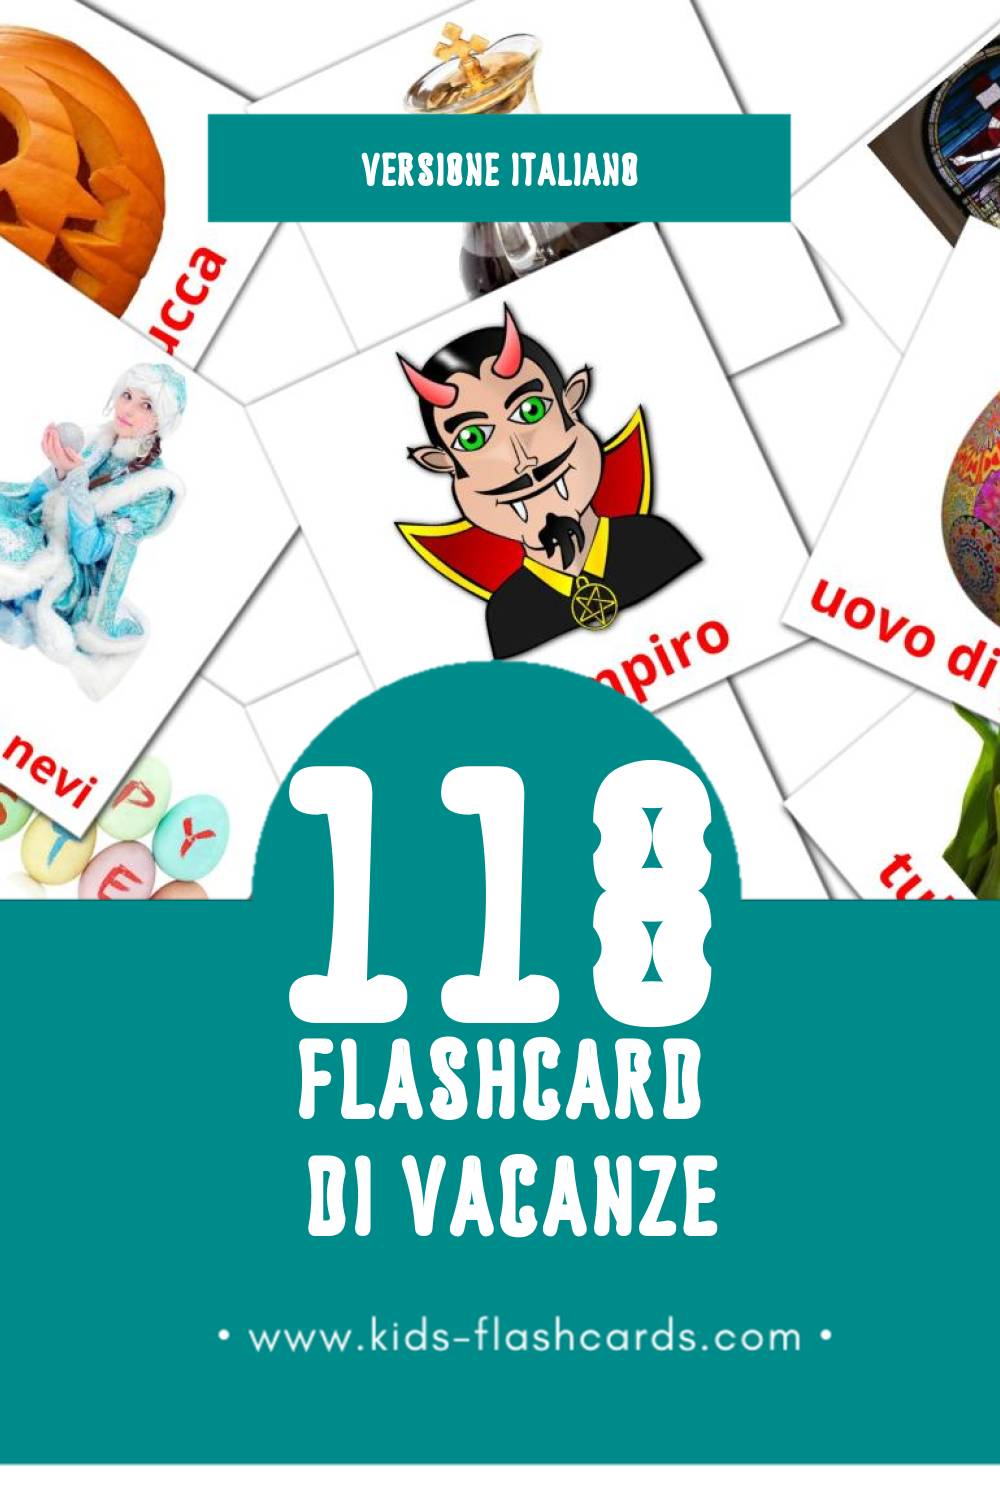 Schede visive sugli Vacanze per bambini (118 schede in Italiano)